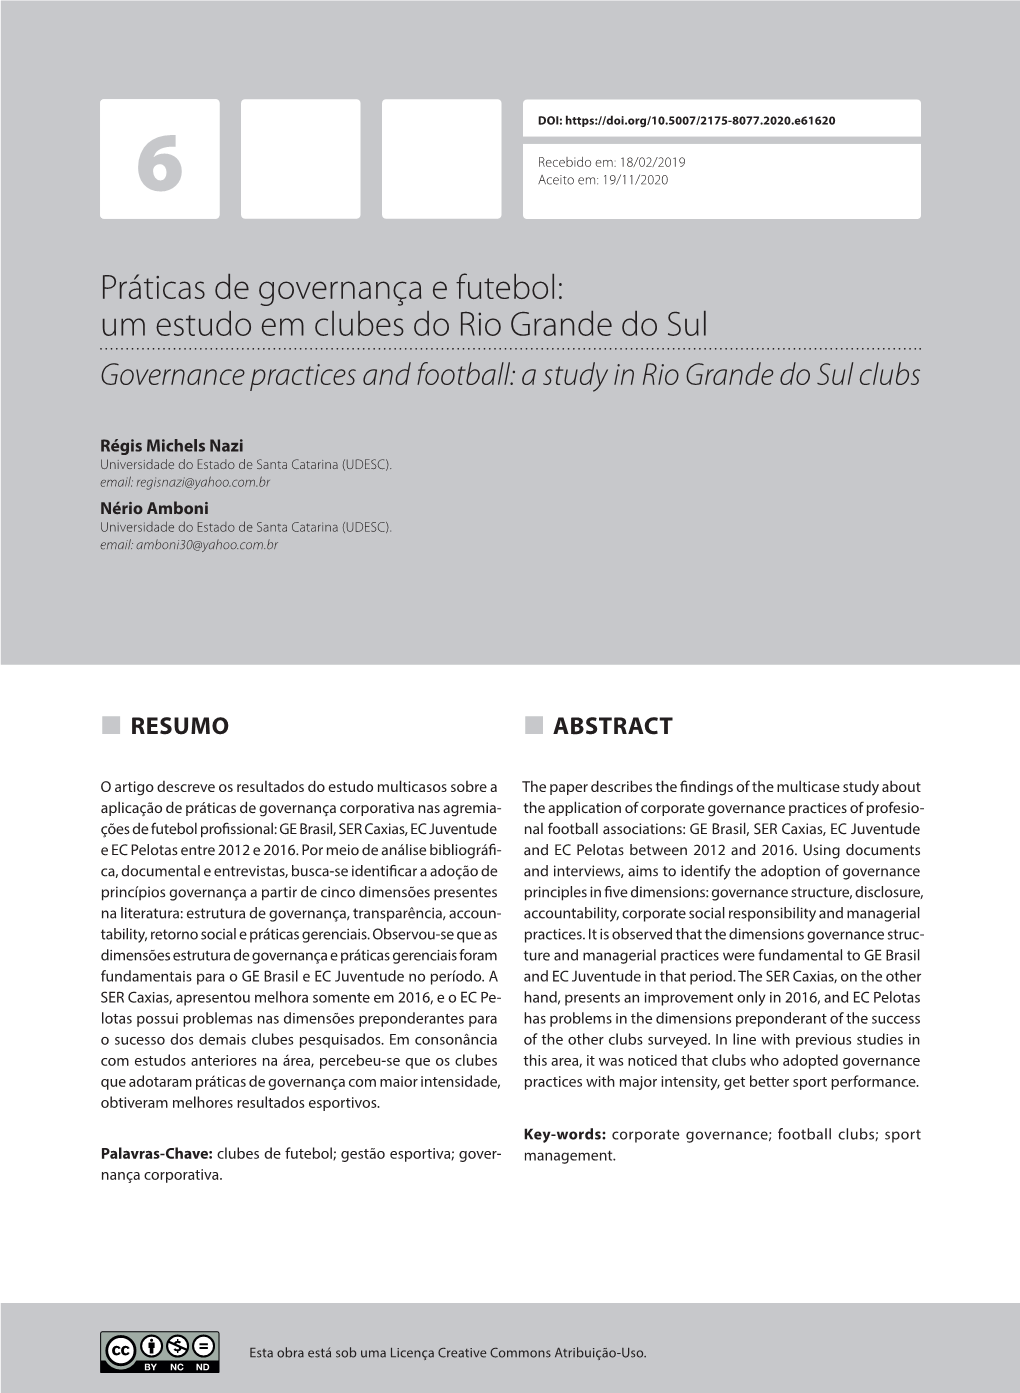 Práticas De Governança E Futebol: Um Estudo Em Clubes Do Rio Grande Do Sul